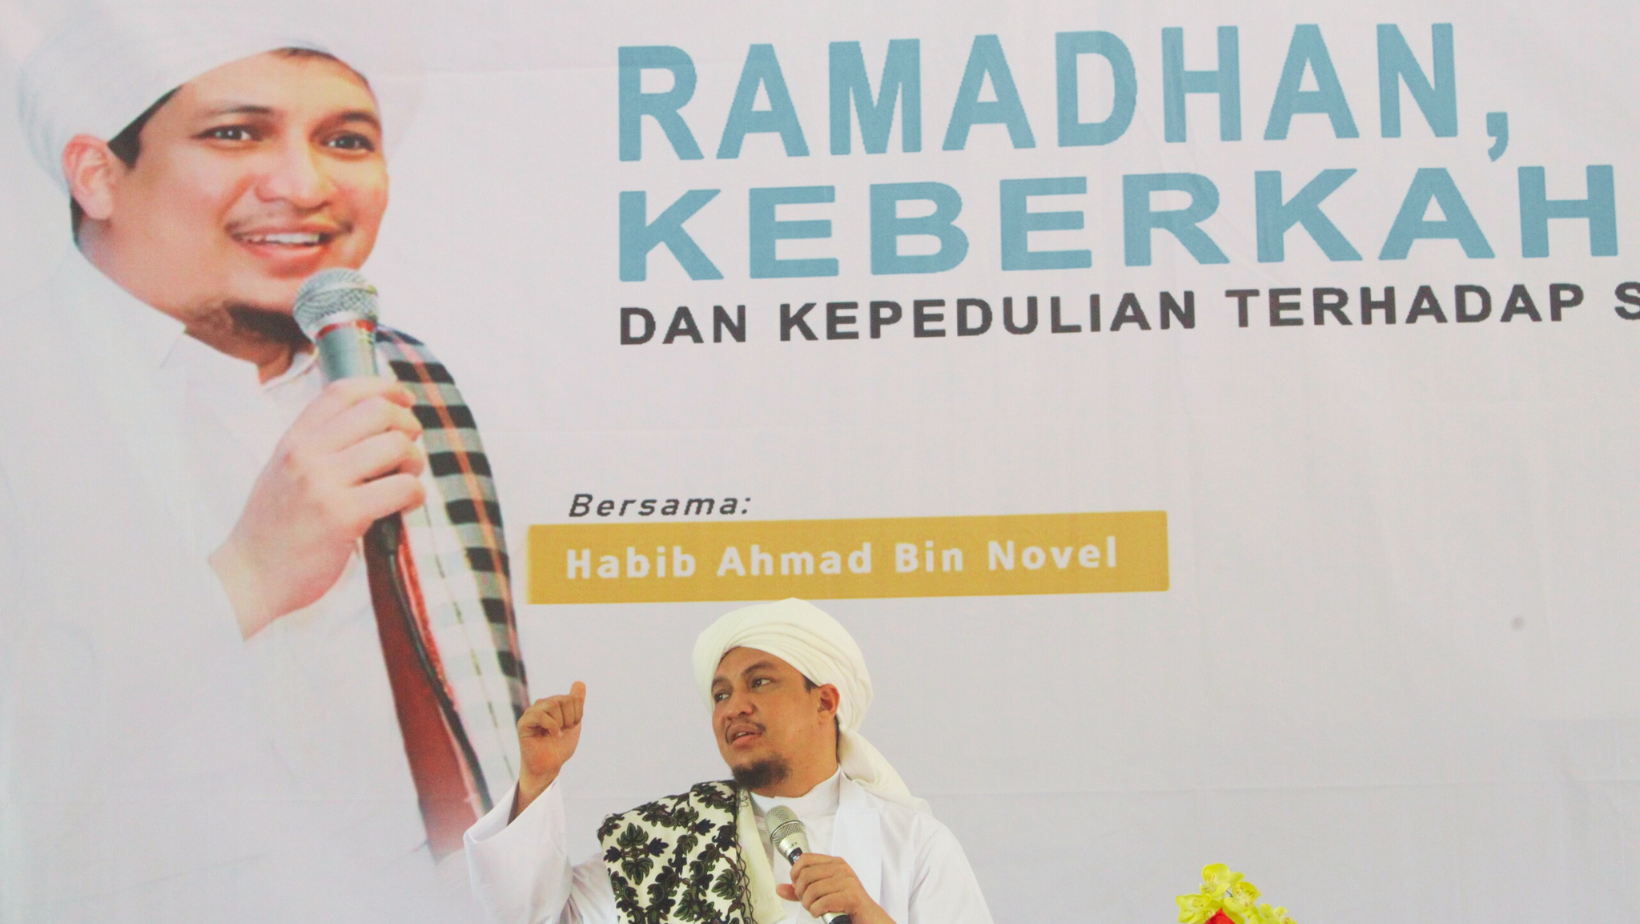 Ramadhan: Waktu Keberkahan dan Kepedulian Terhadap Sesama